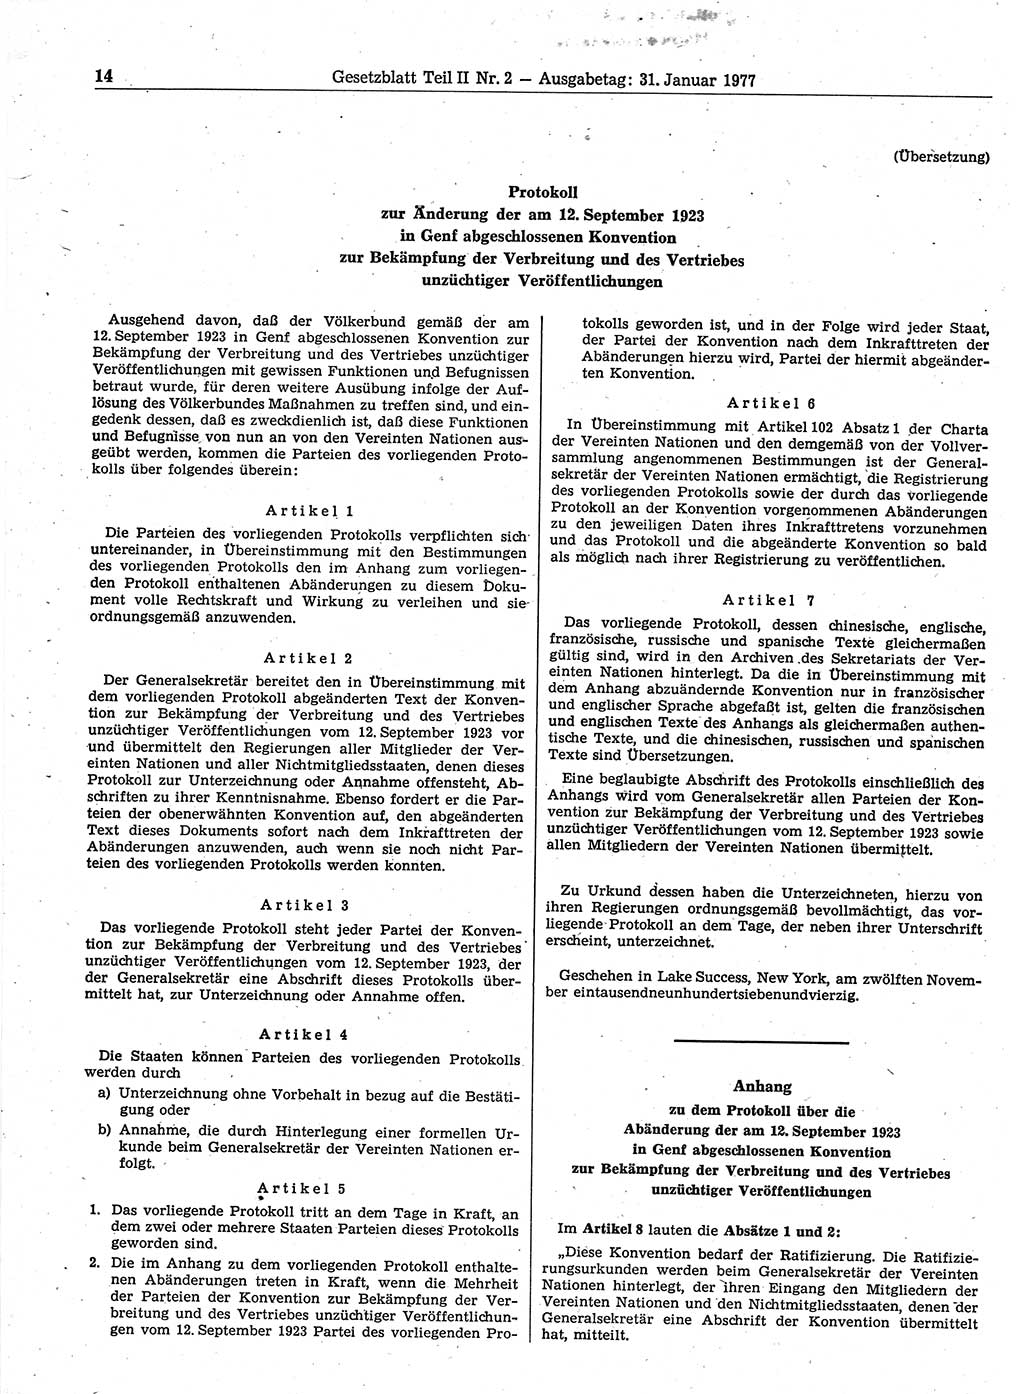 Gesetzblatt (GBl.) der Deutschen Demokratischen Republik (DDR) Teil ⅠⅠ 1977, Seite 14 (GBl. DDR ⅠⅠ 1977, S. 14)